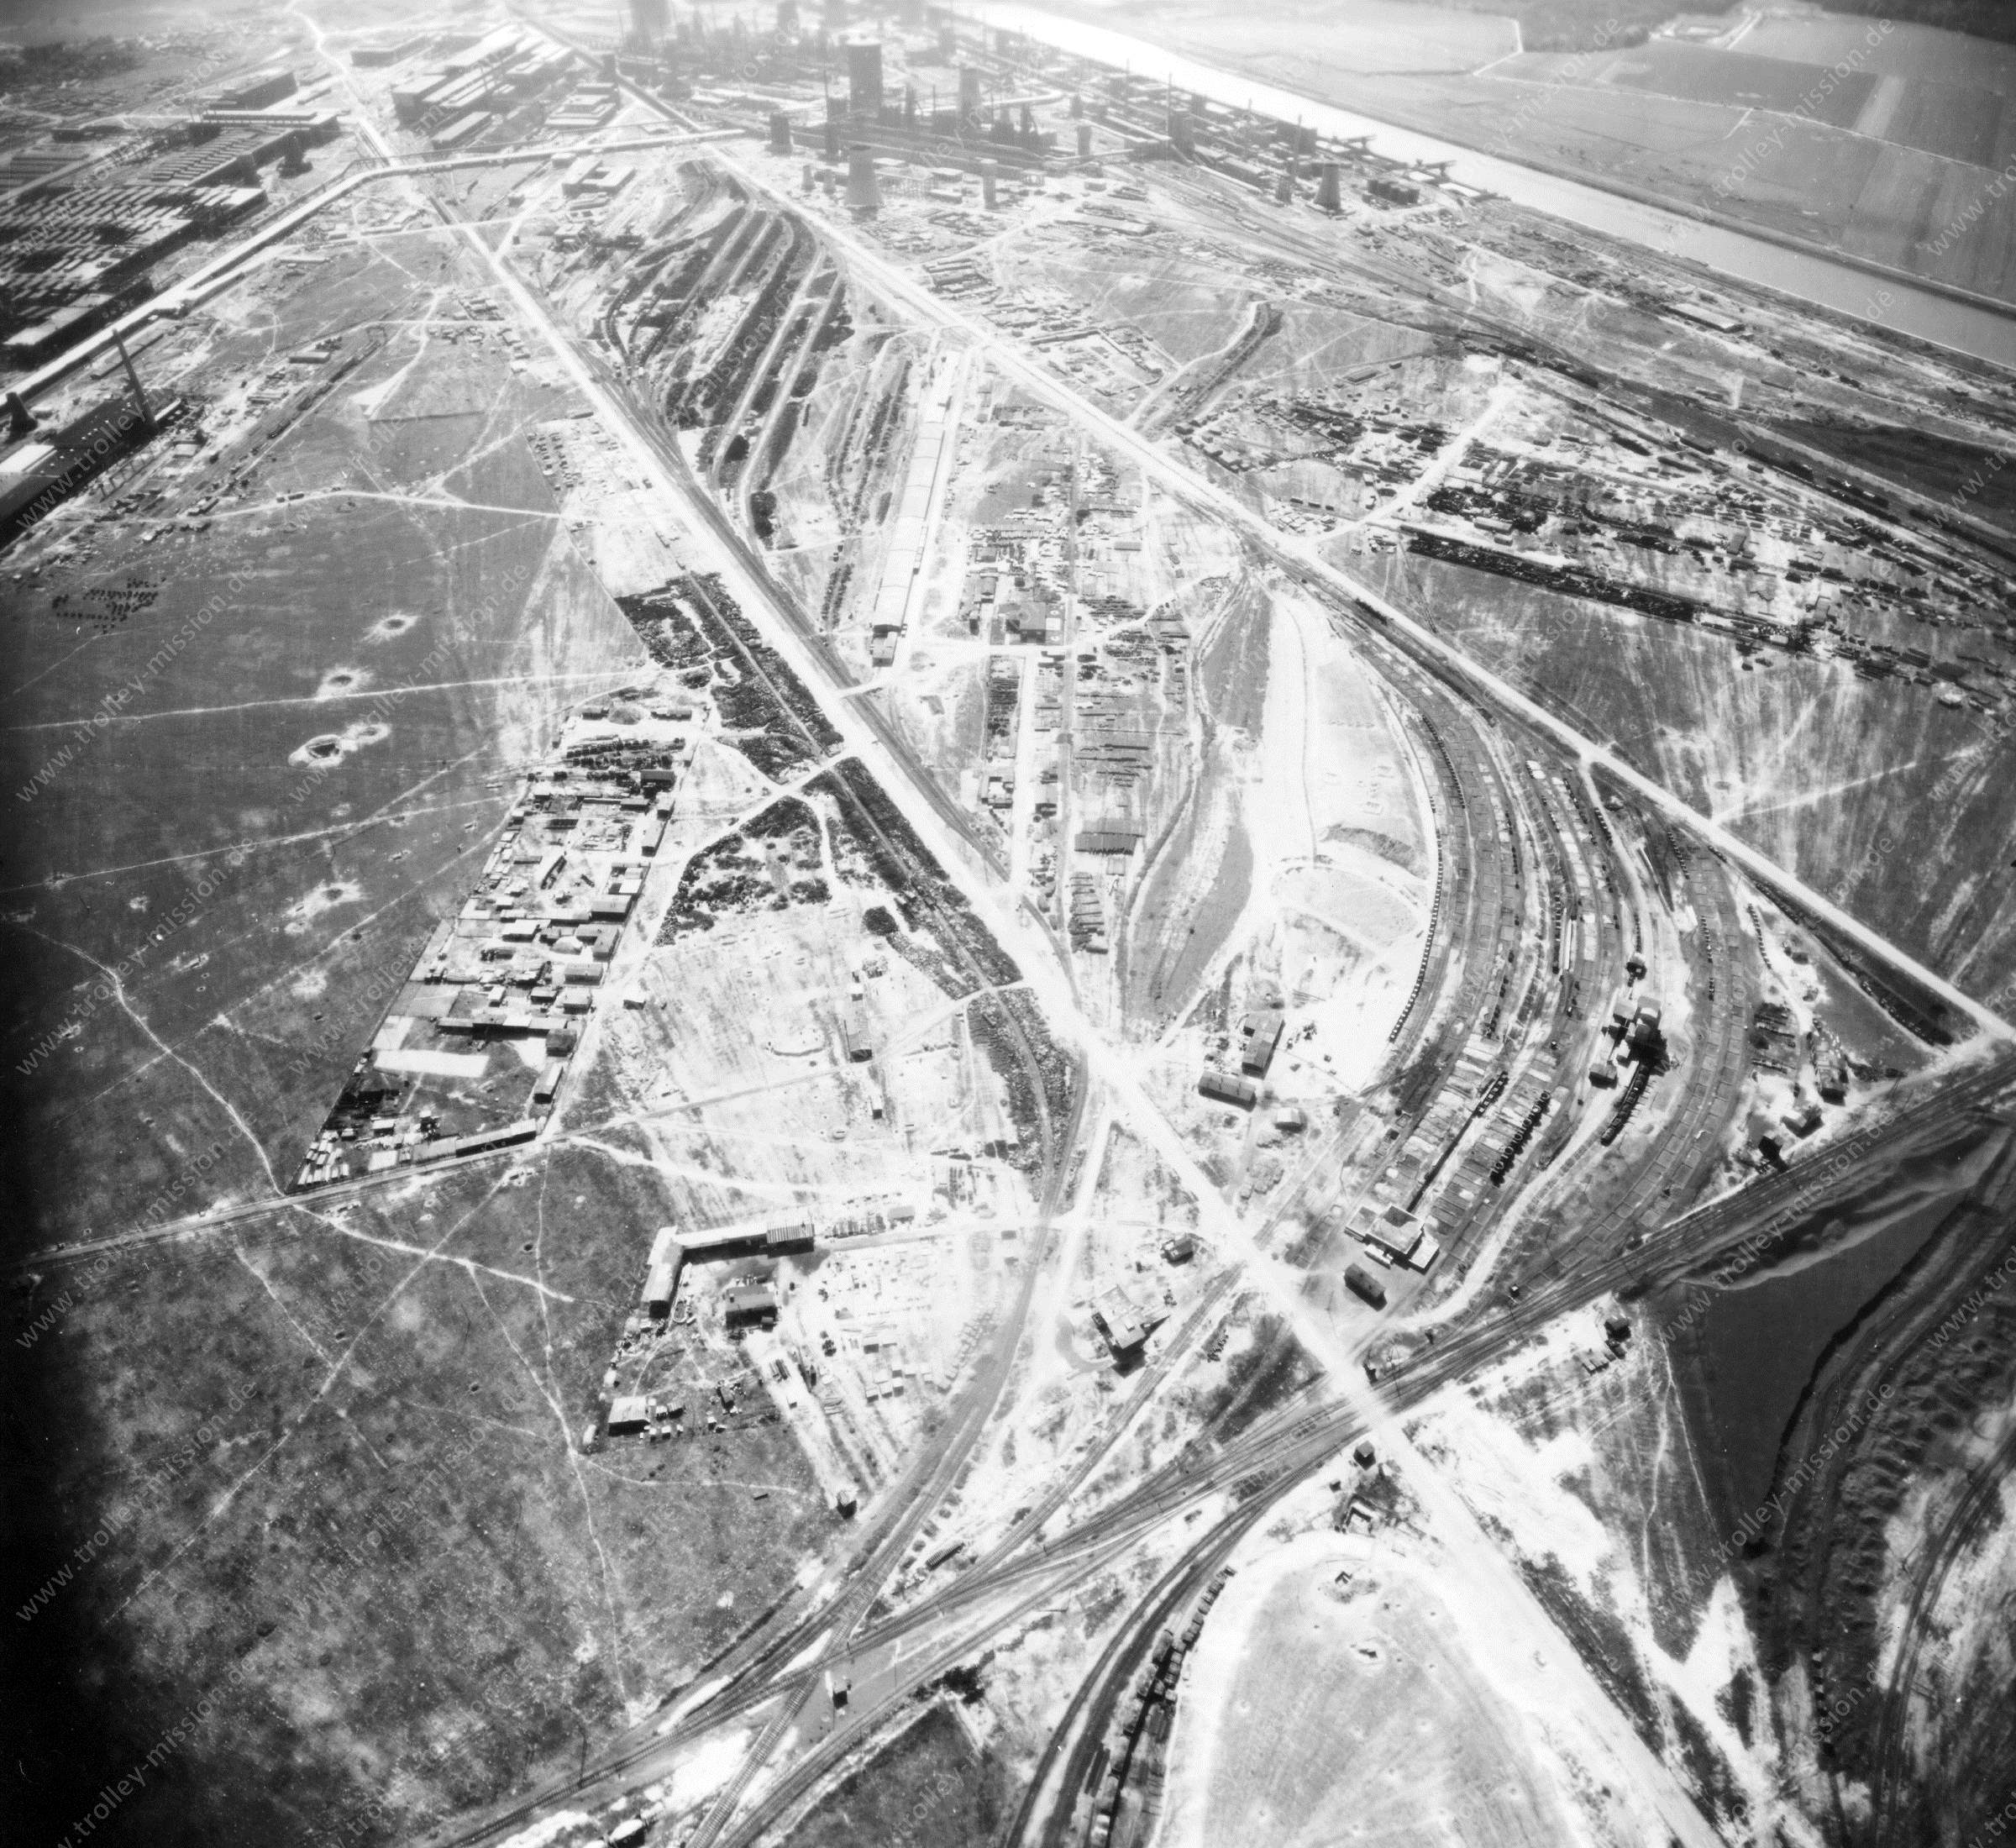 Salzgitter Reichswerke Hermann Göring from above: Aerial view after Allied air raids in World War II